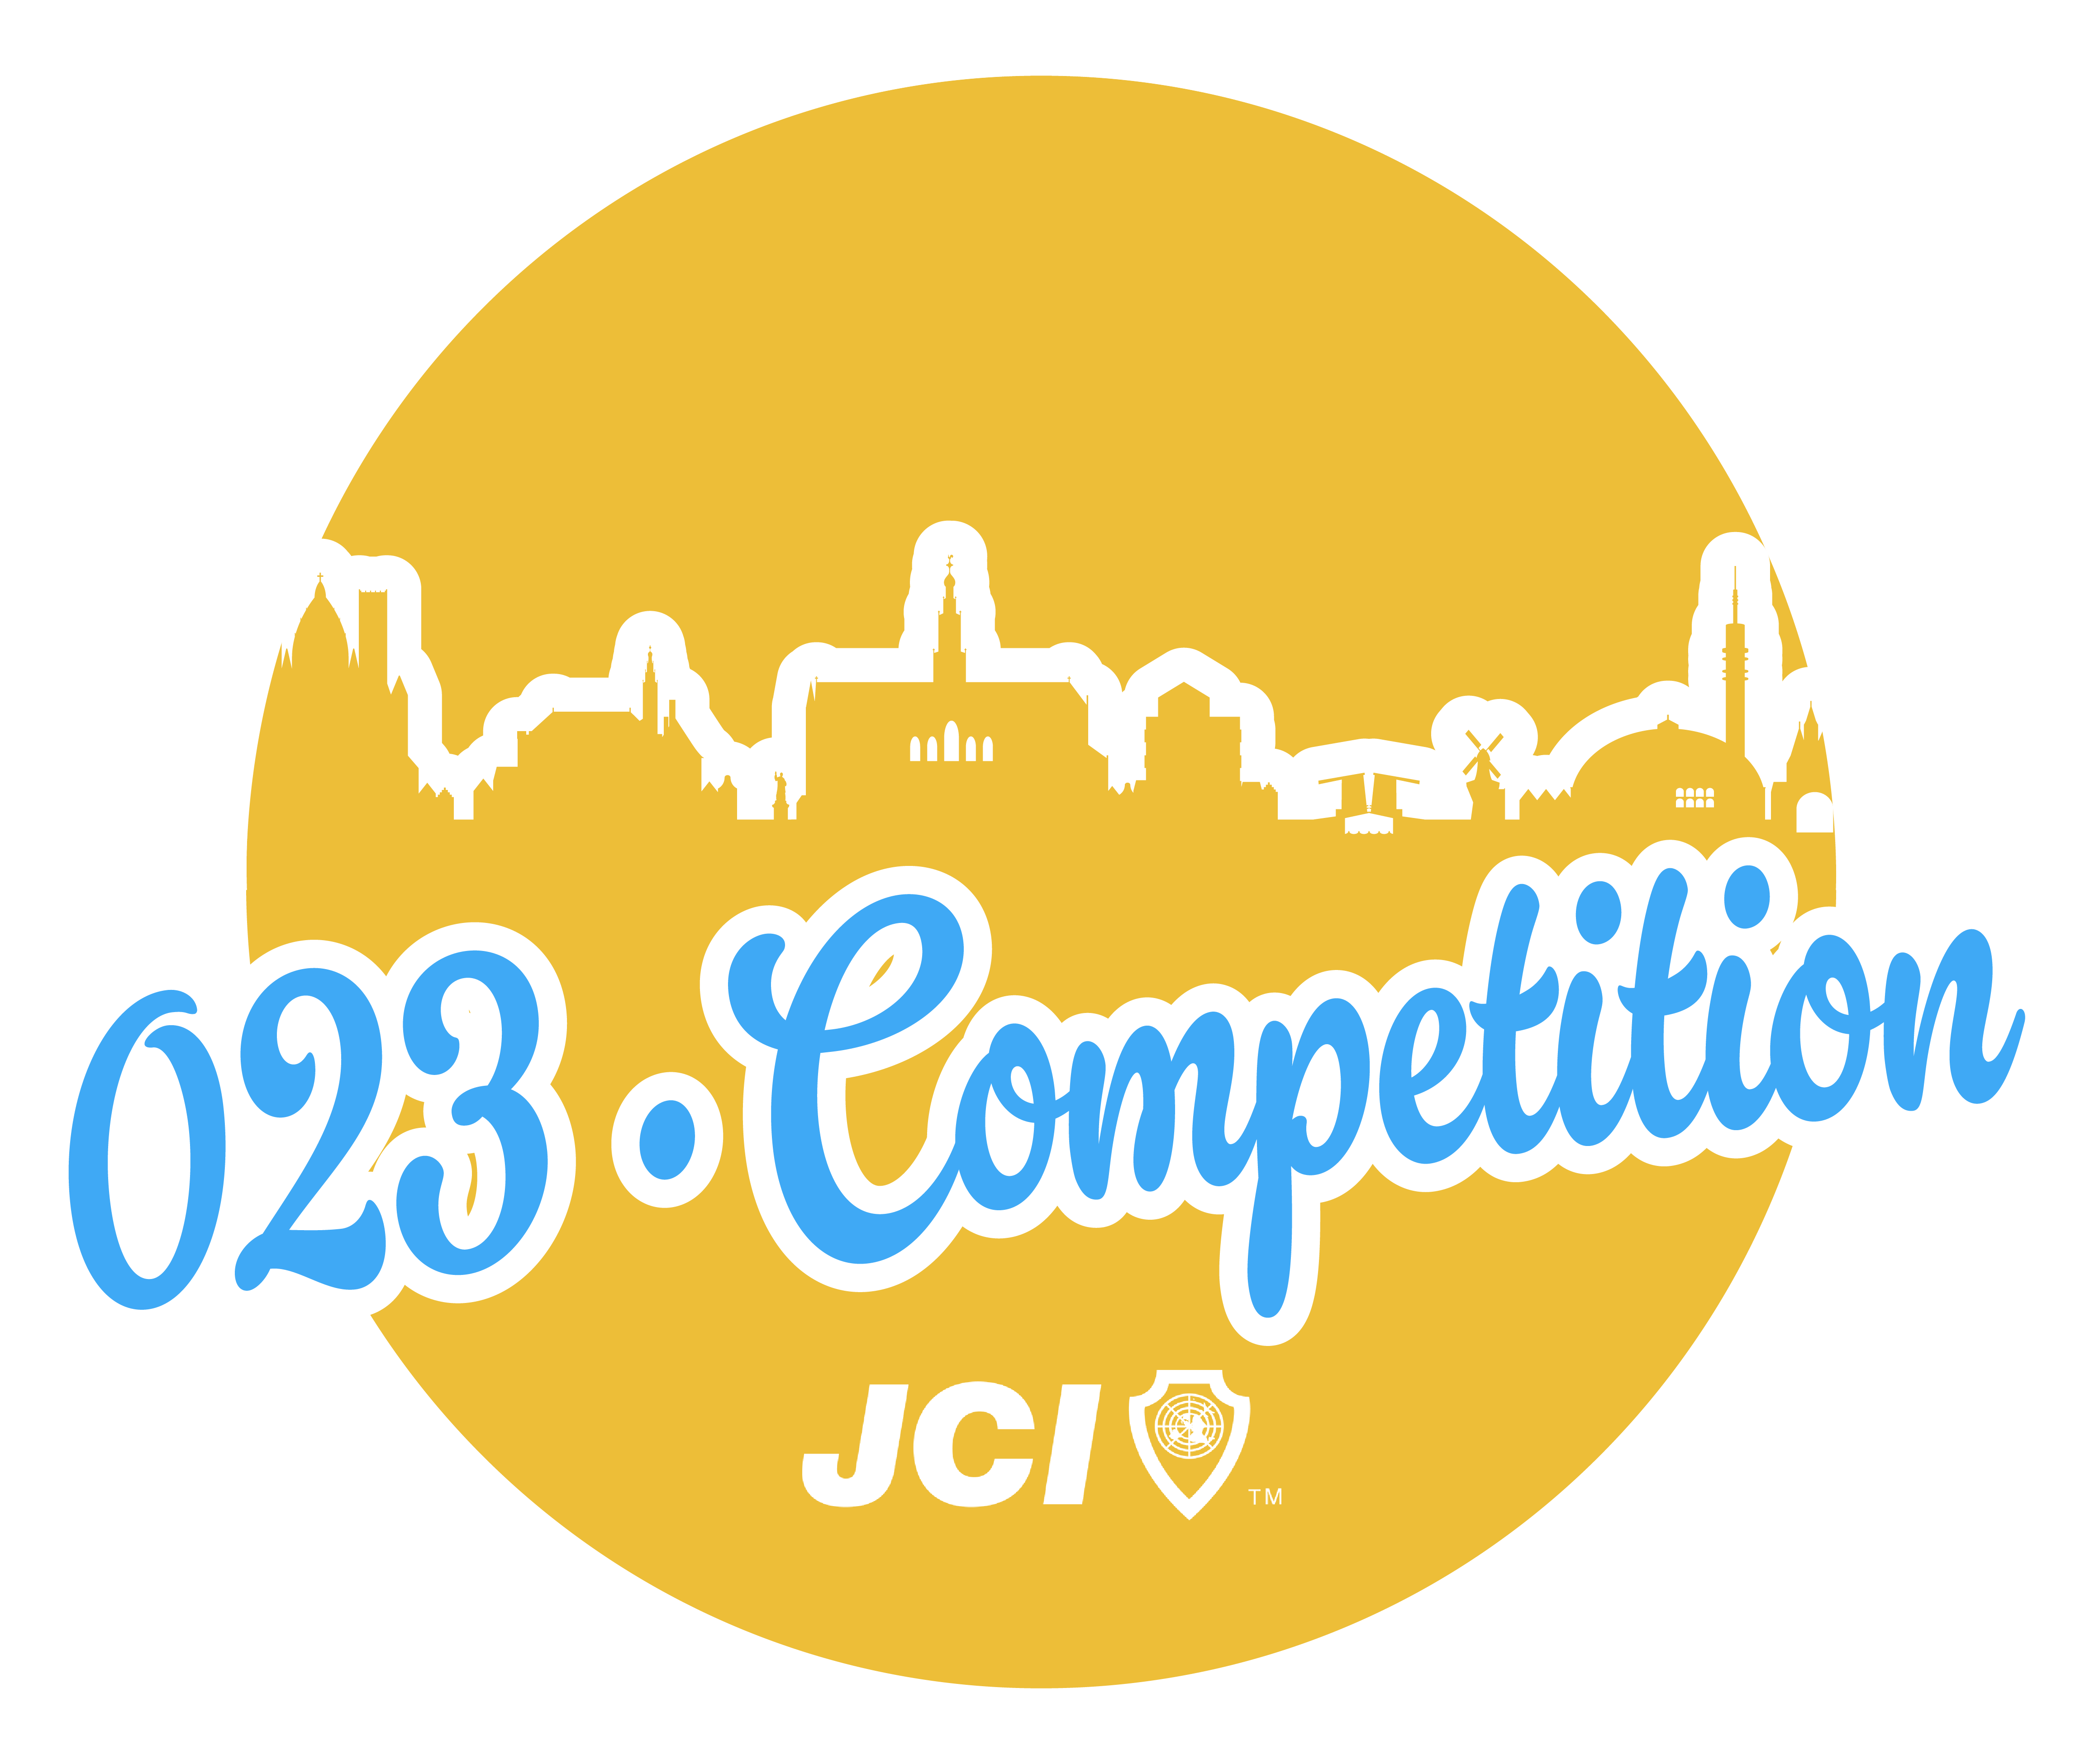 JCI Kennemerland 023 Competition